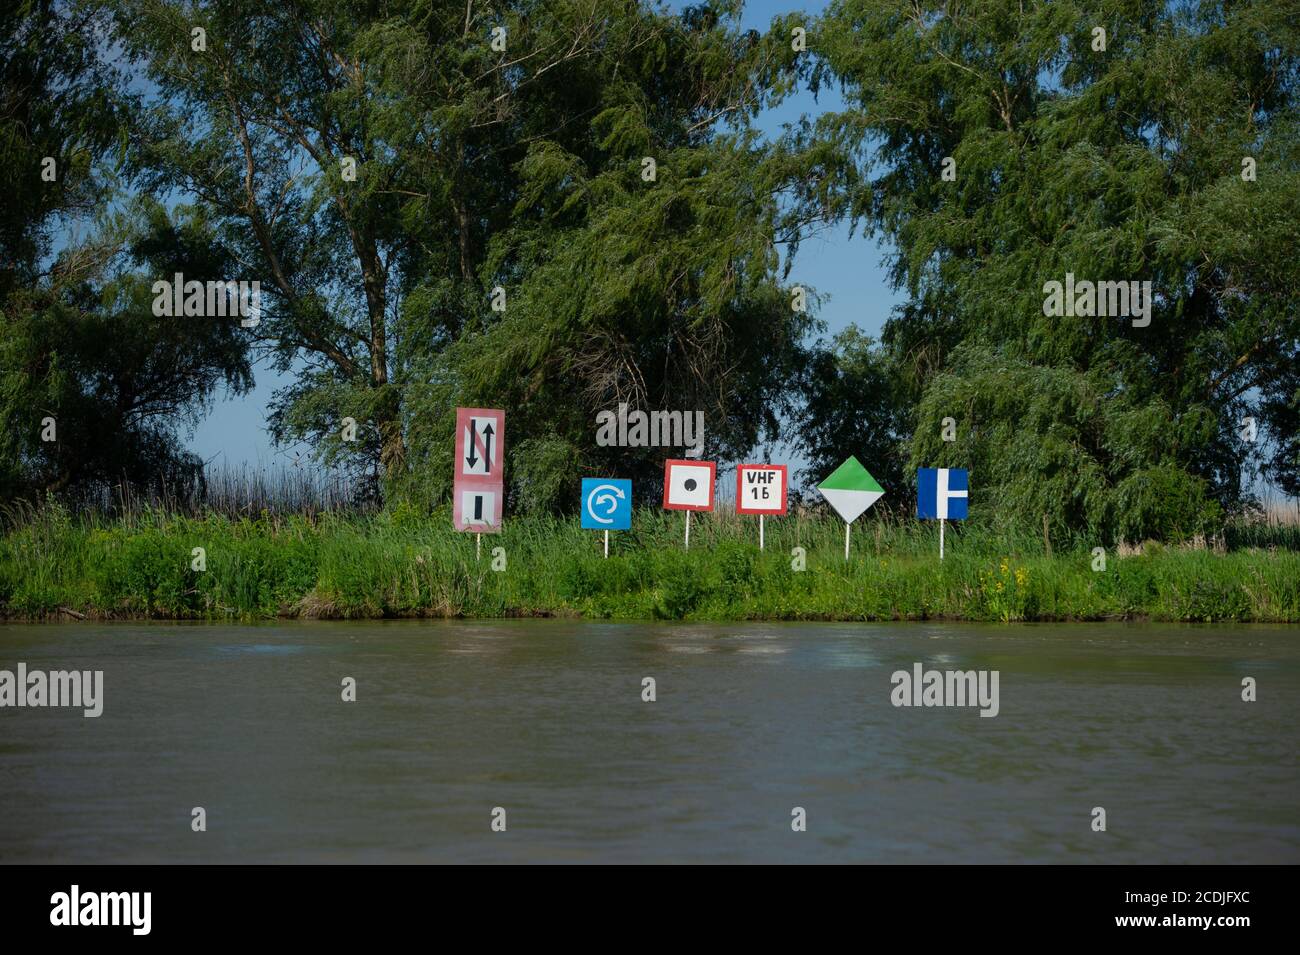 Les rives du Danube, dans le delta du Danube, près de Sfantu Gheorghe, en Roumanie, sont riches de plantes, d'animaux et d'autres sites intéressants. Banque D'Images